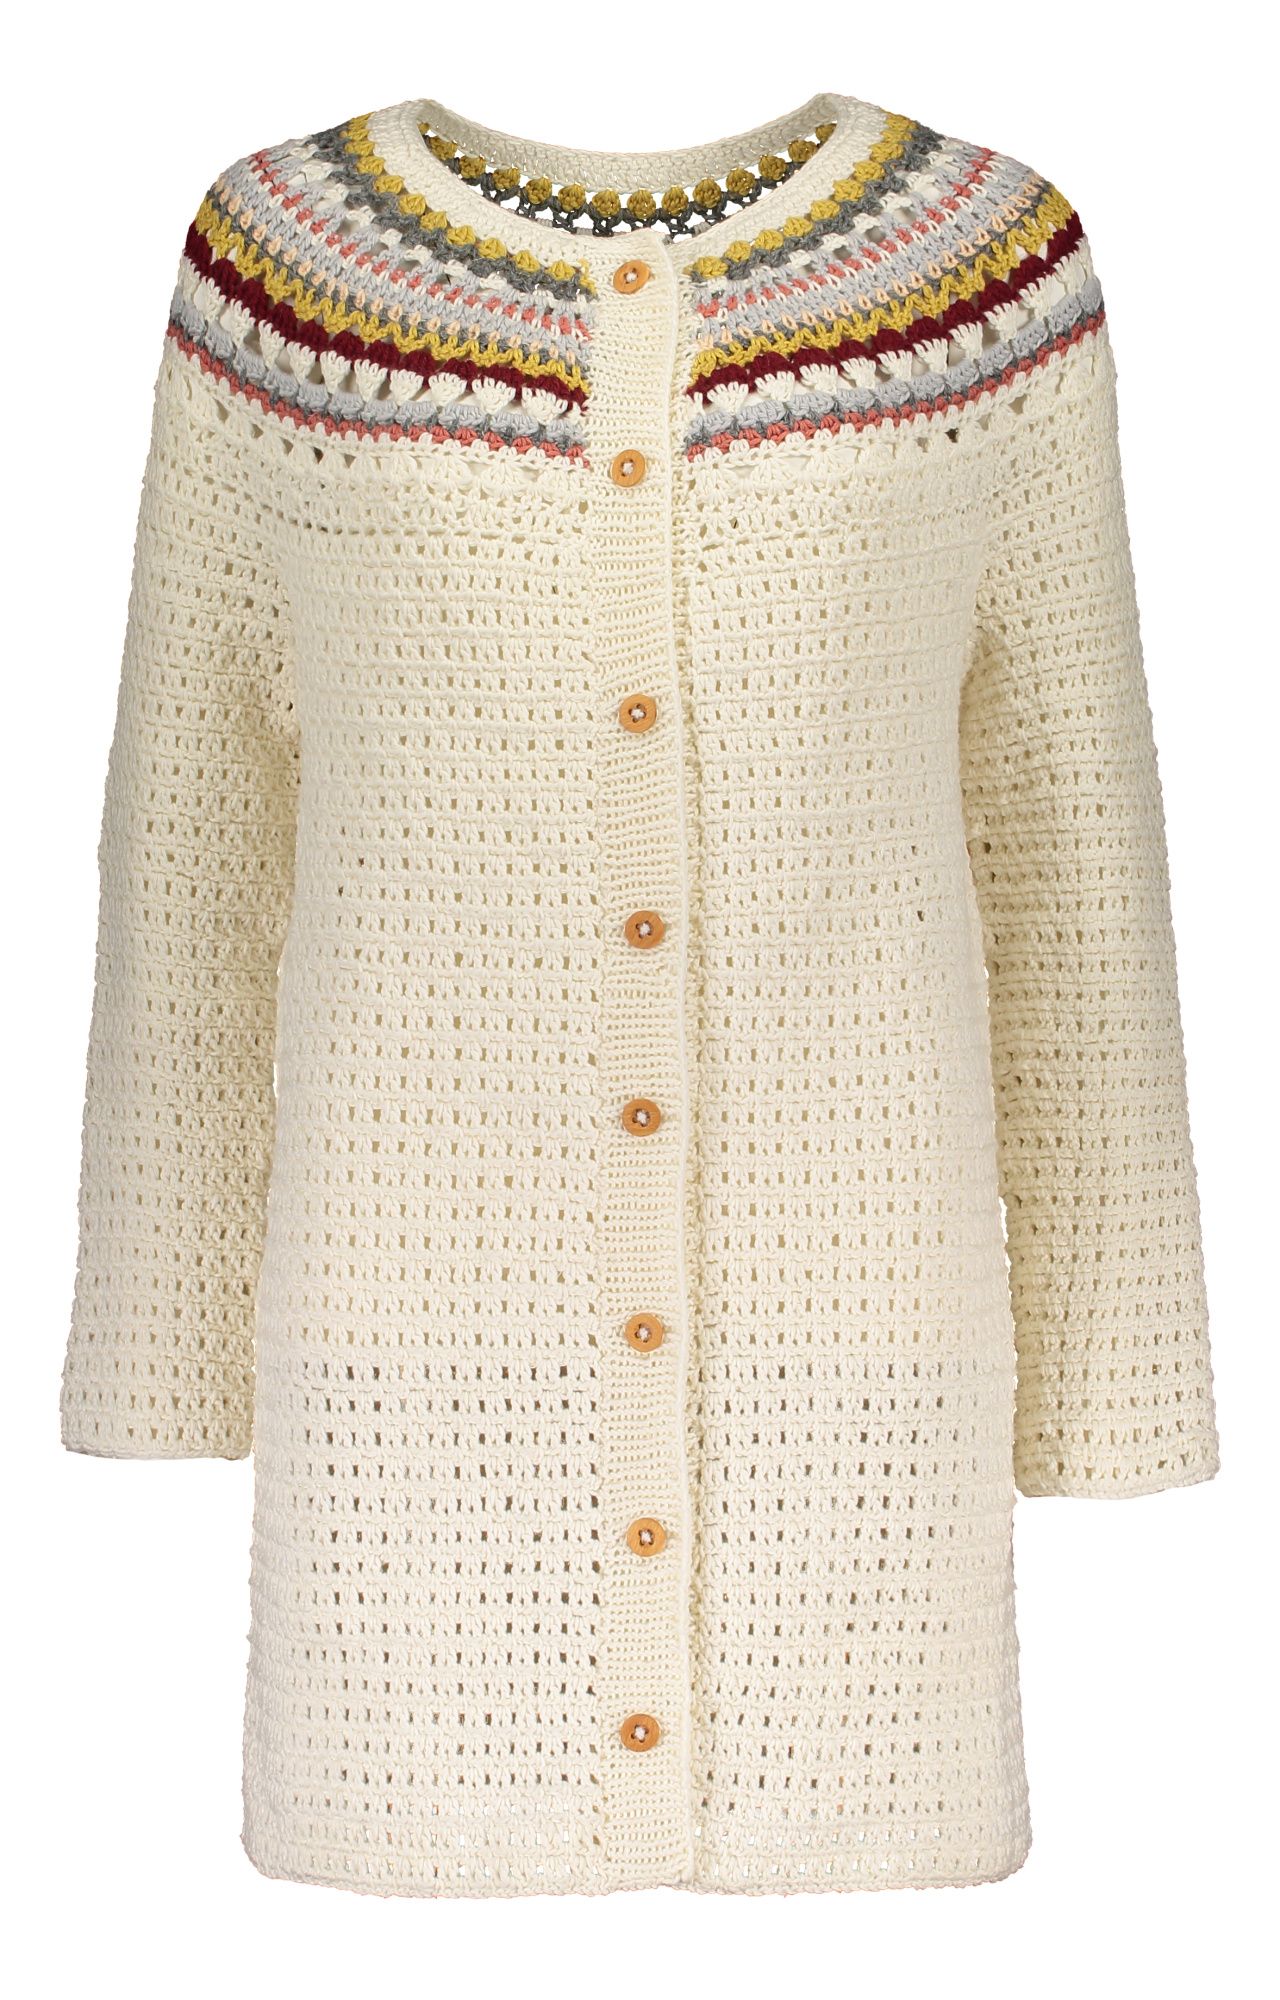 Naisen virkattu takki Novita Wool Cotton ja Nordic Wool Example 2